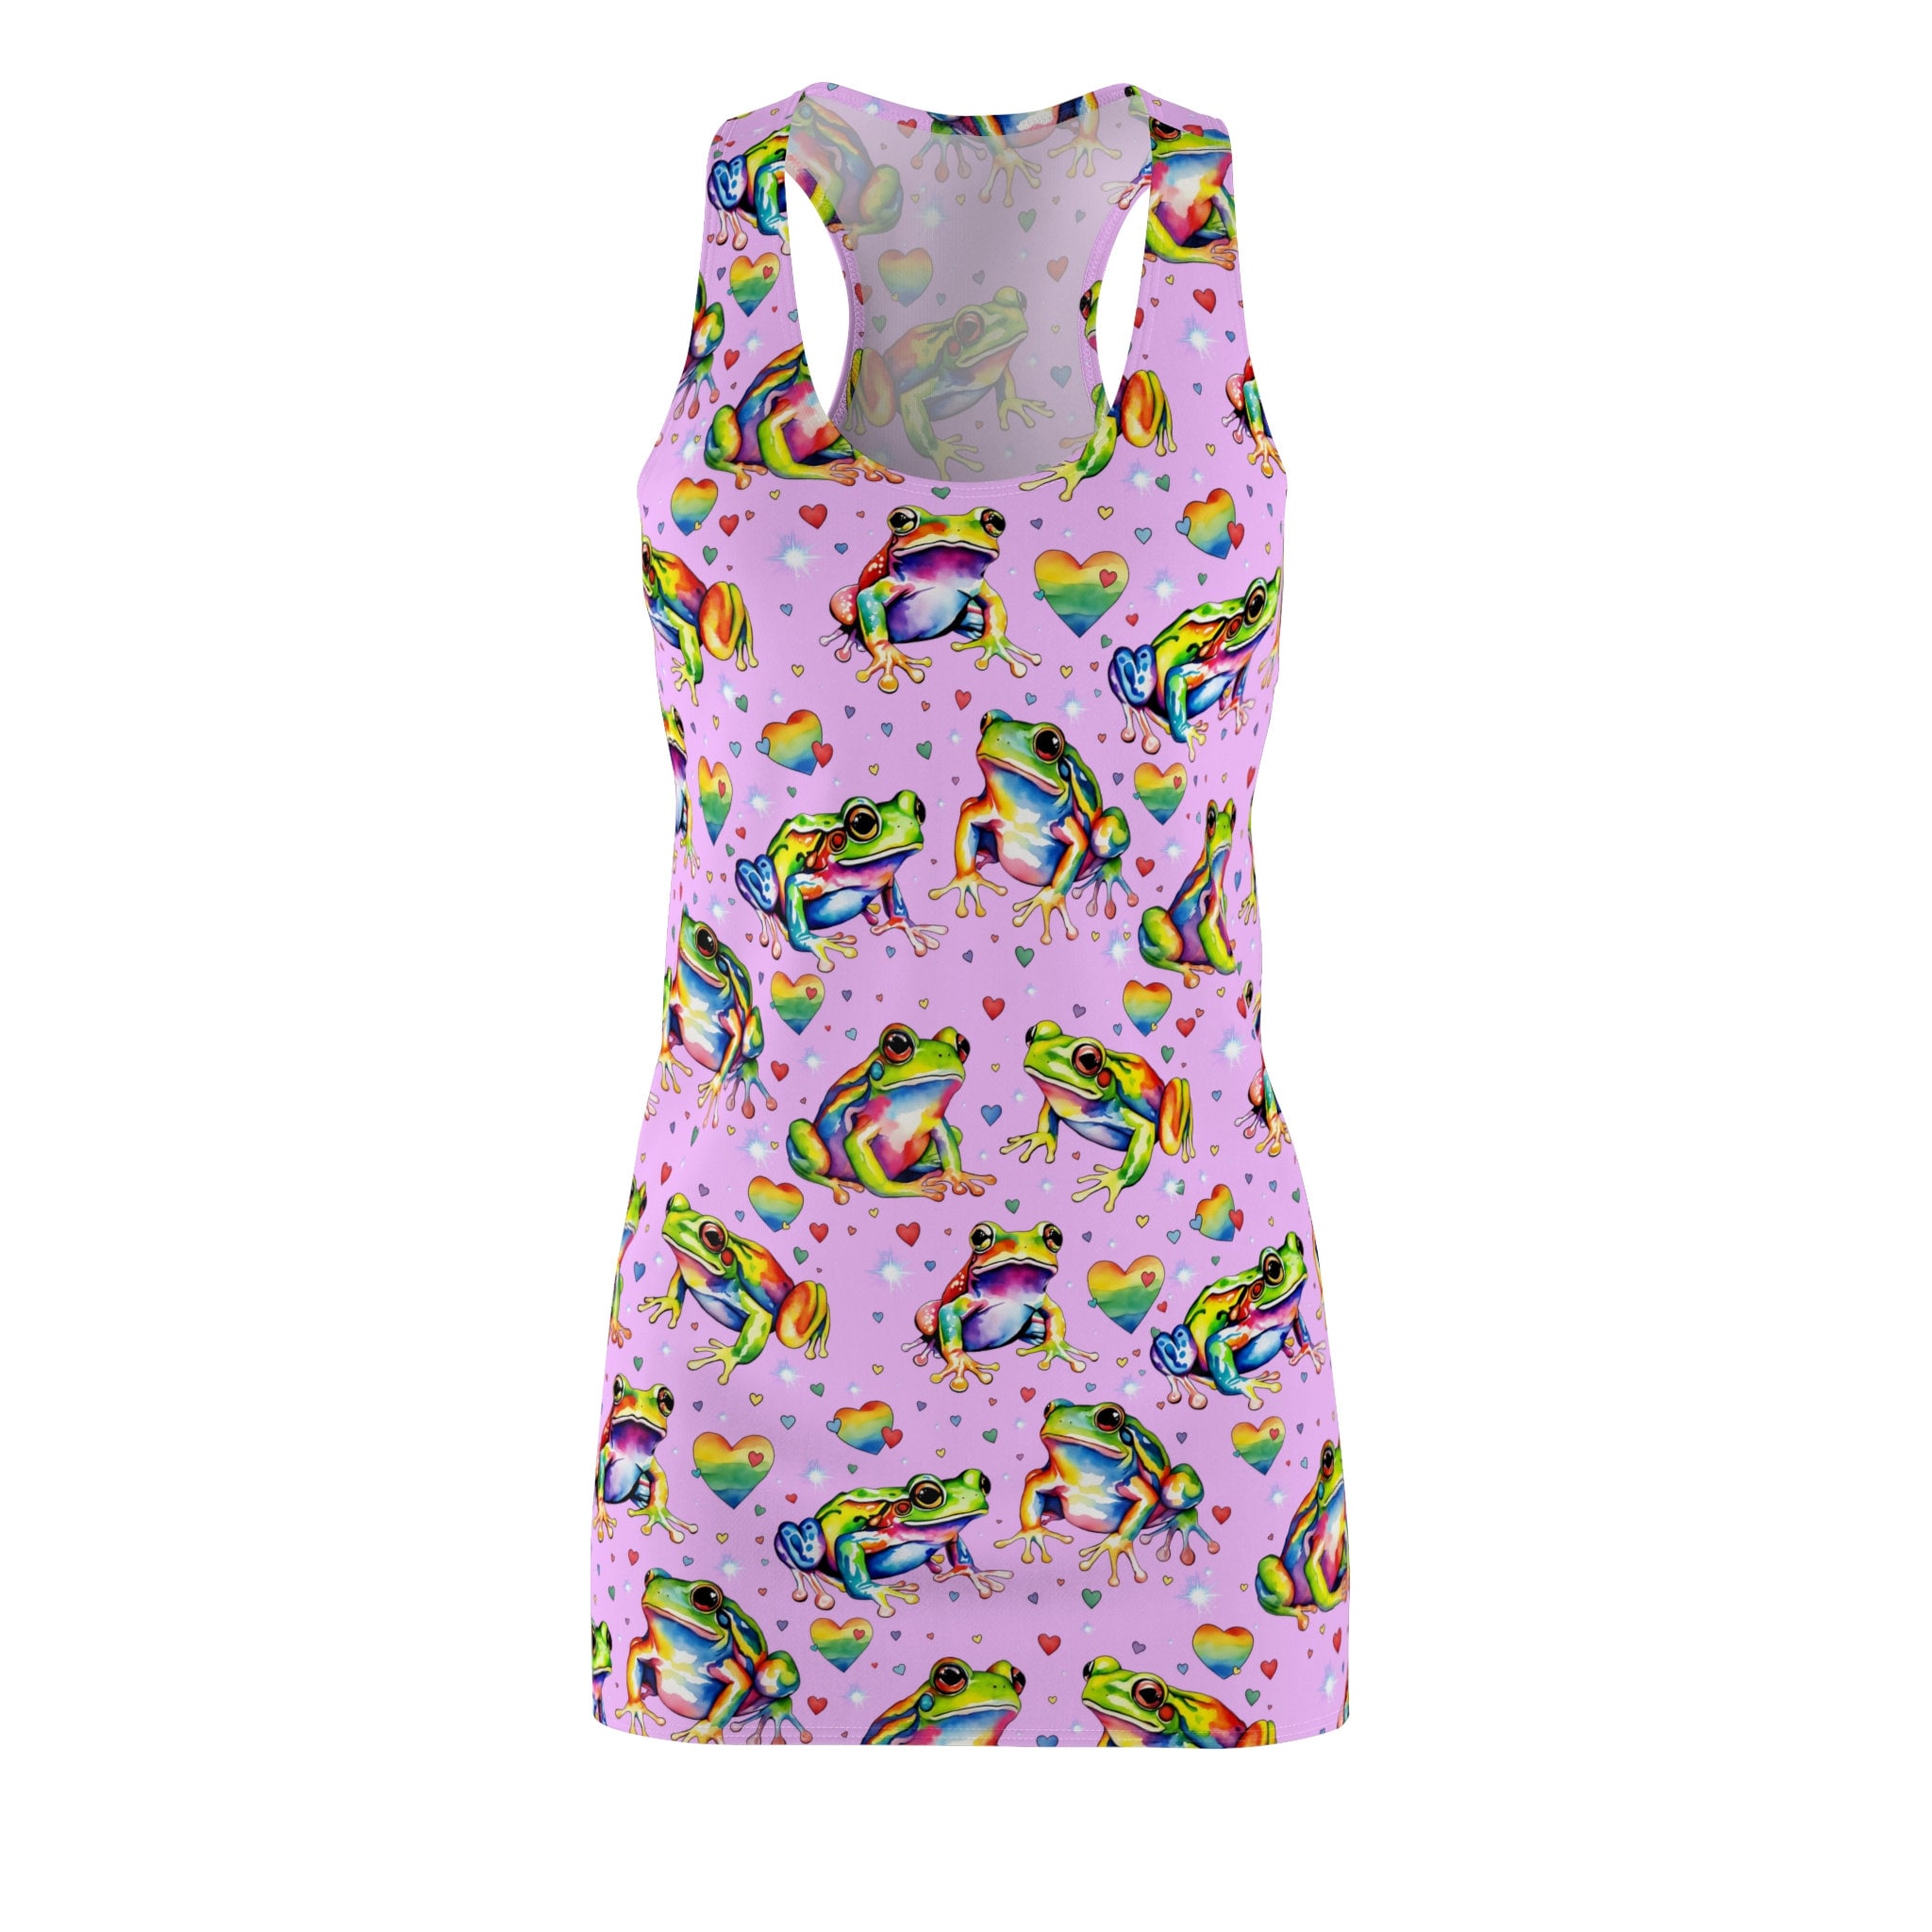 Rainbow Frogs Women's Cut & Sew Racerback Dress